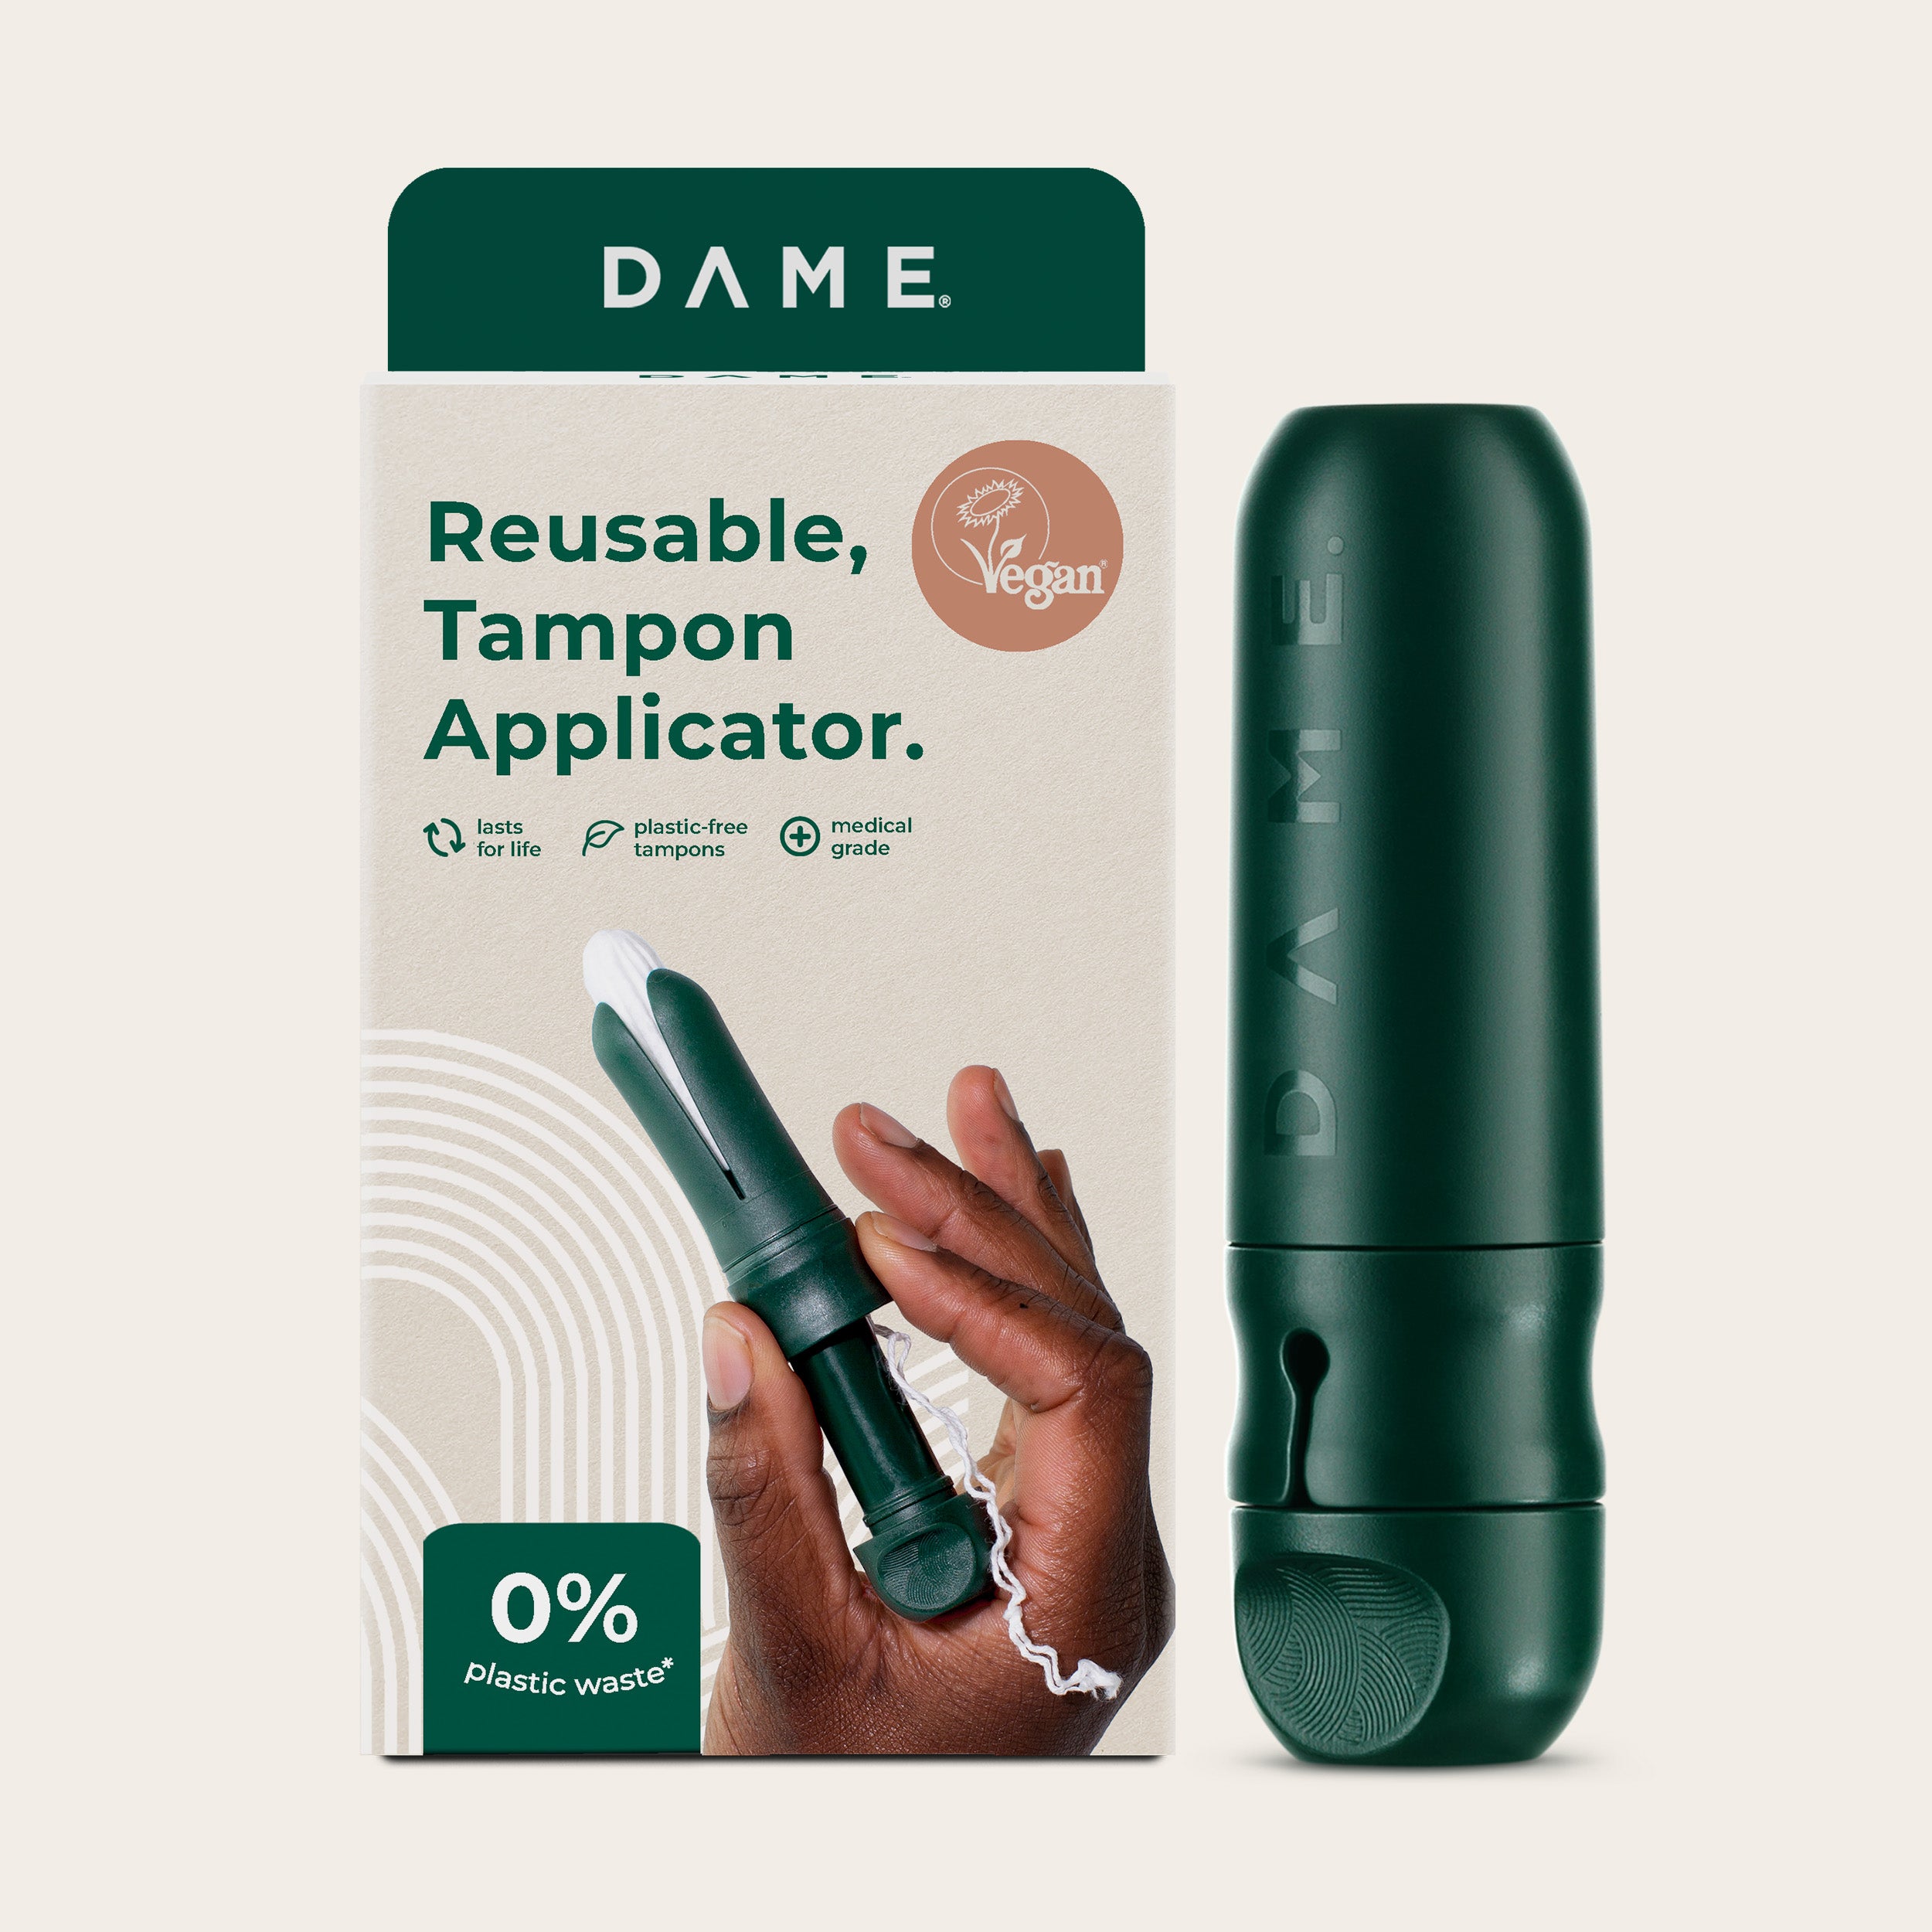 DAME's Reusable Tampon Applicator